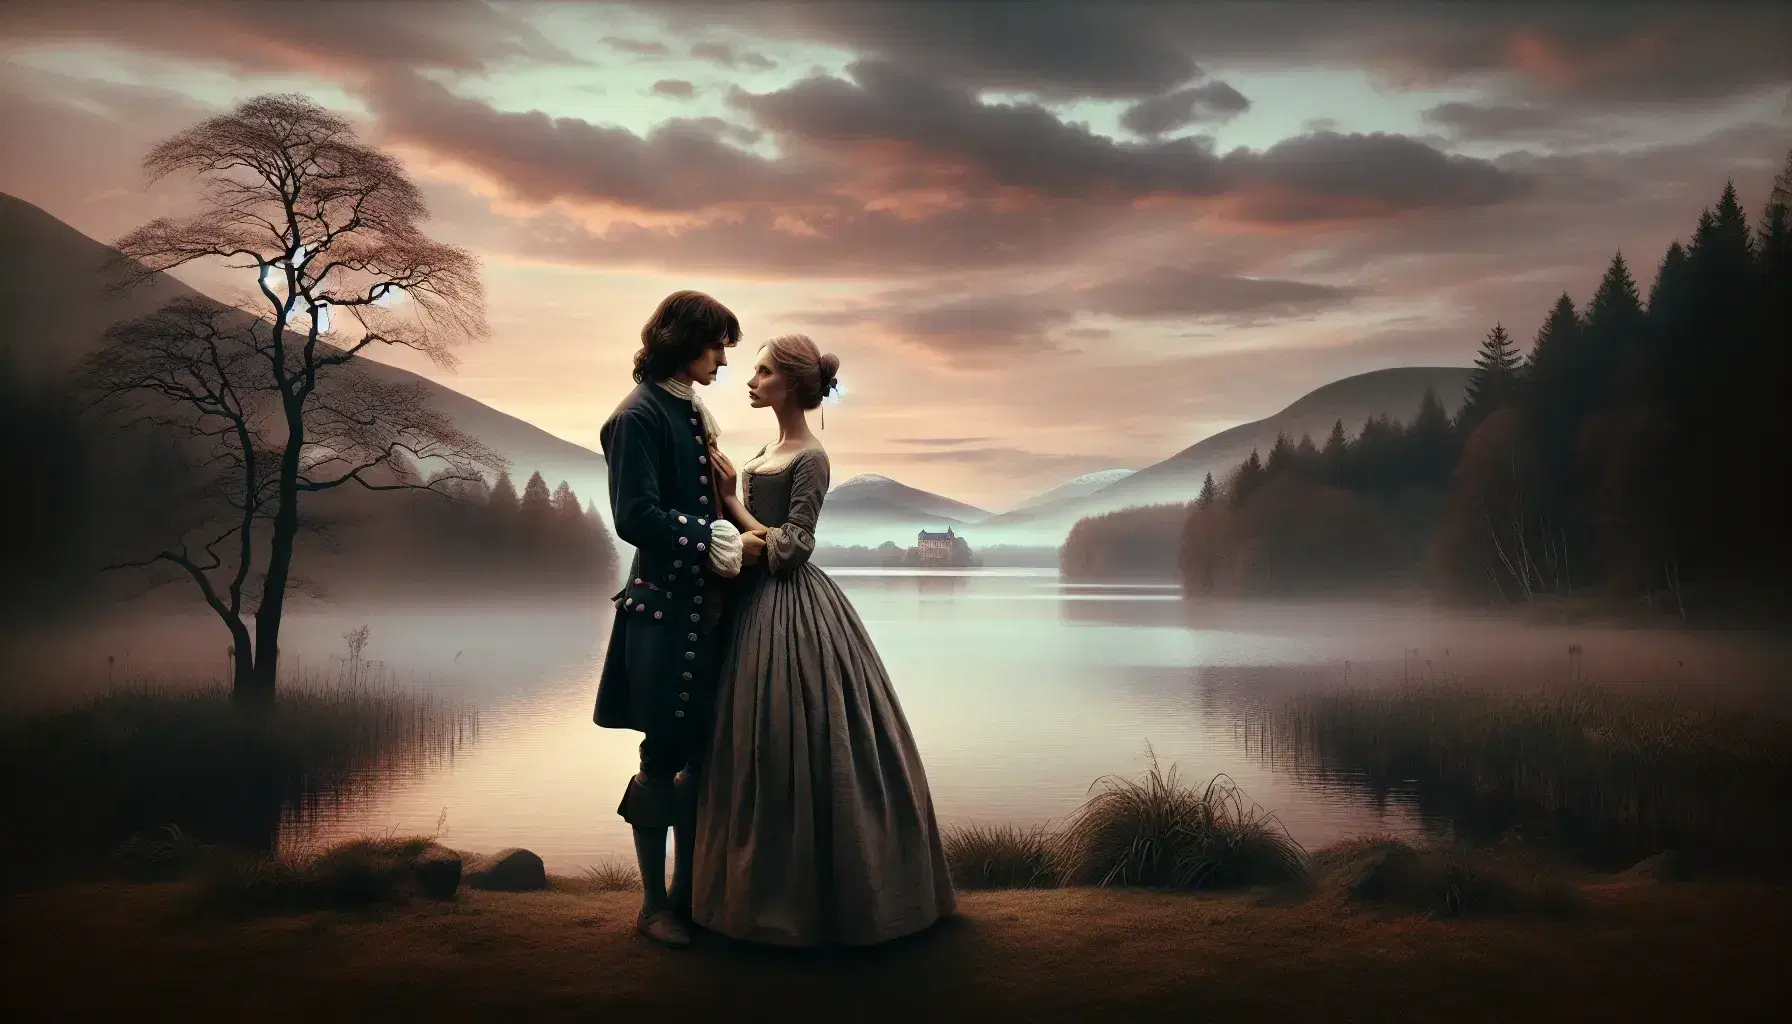 Giovane coppia in abiti del XVII secolo si abbraccia in un paesaggio romantico con lago, montagne nebbiose e tramonto dorato.